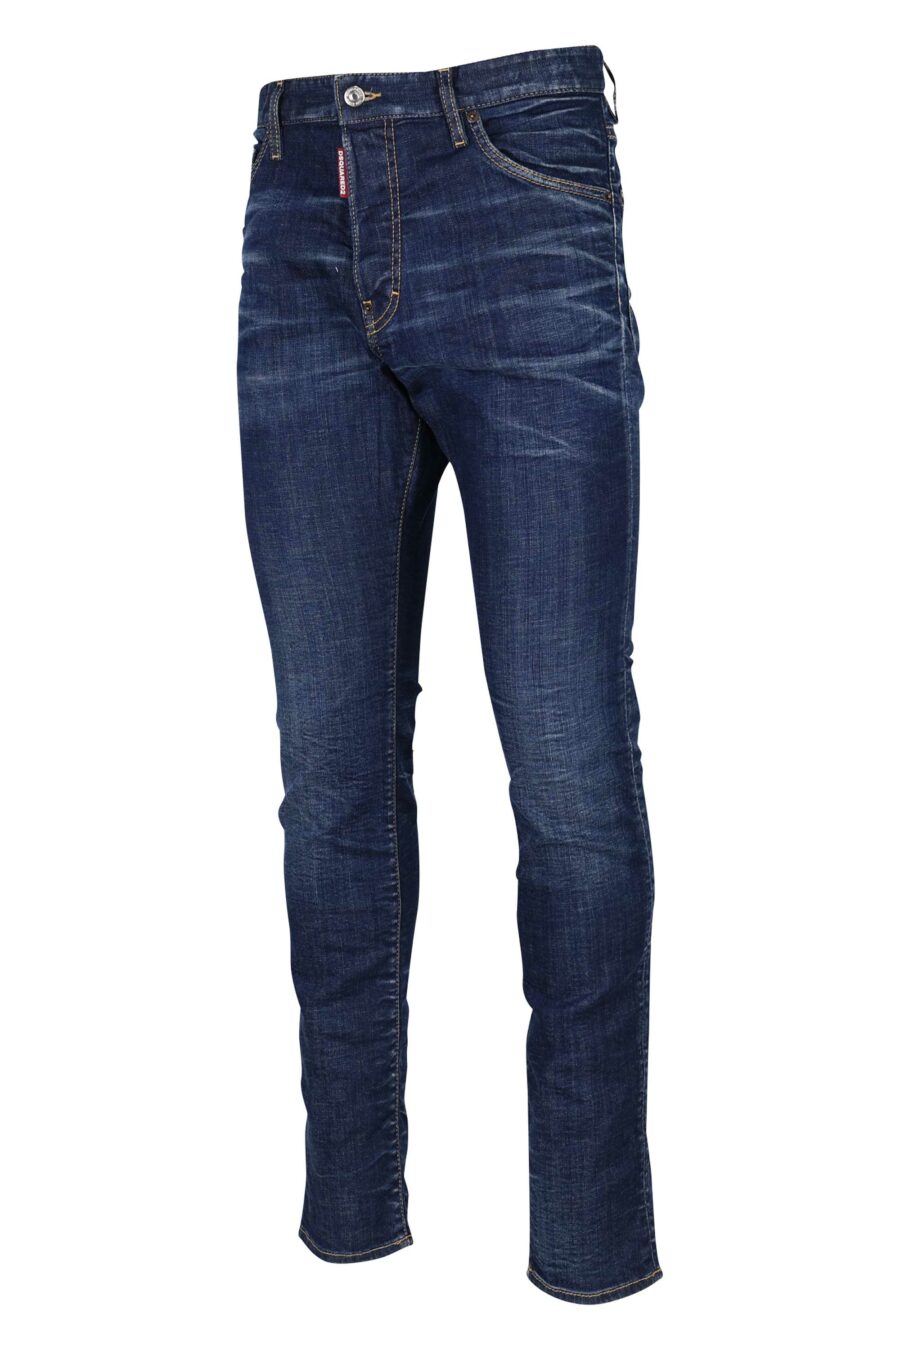 Dsquared2 - Pantalón vaquero azul oscuro cool guy jean - BLS Fashion